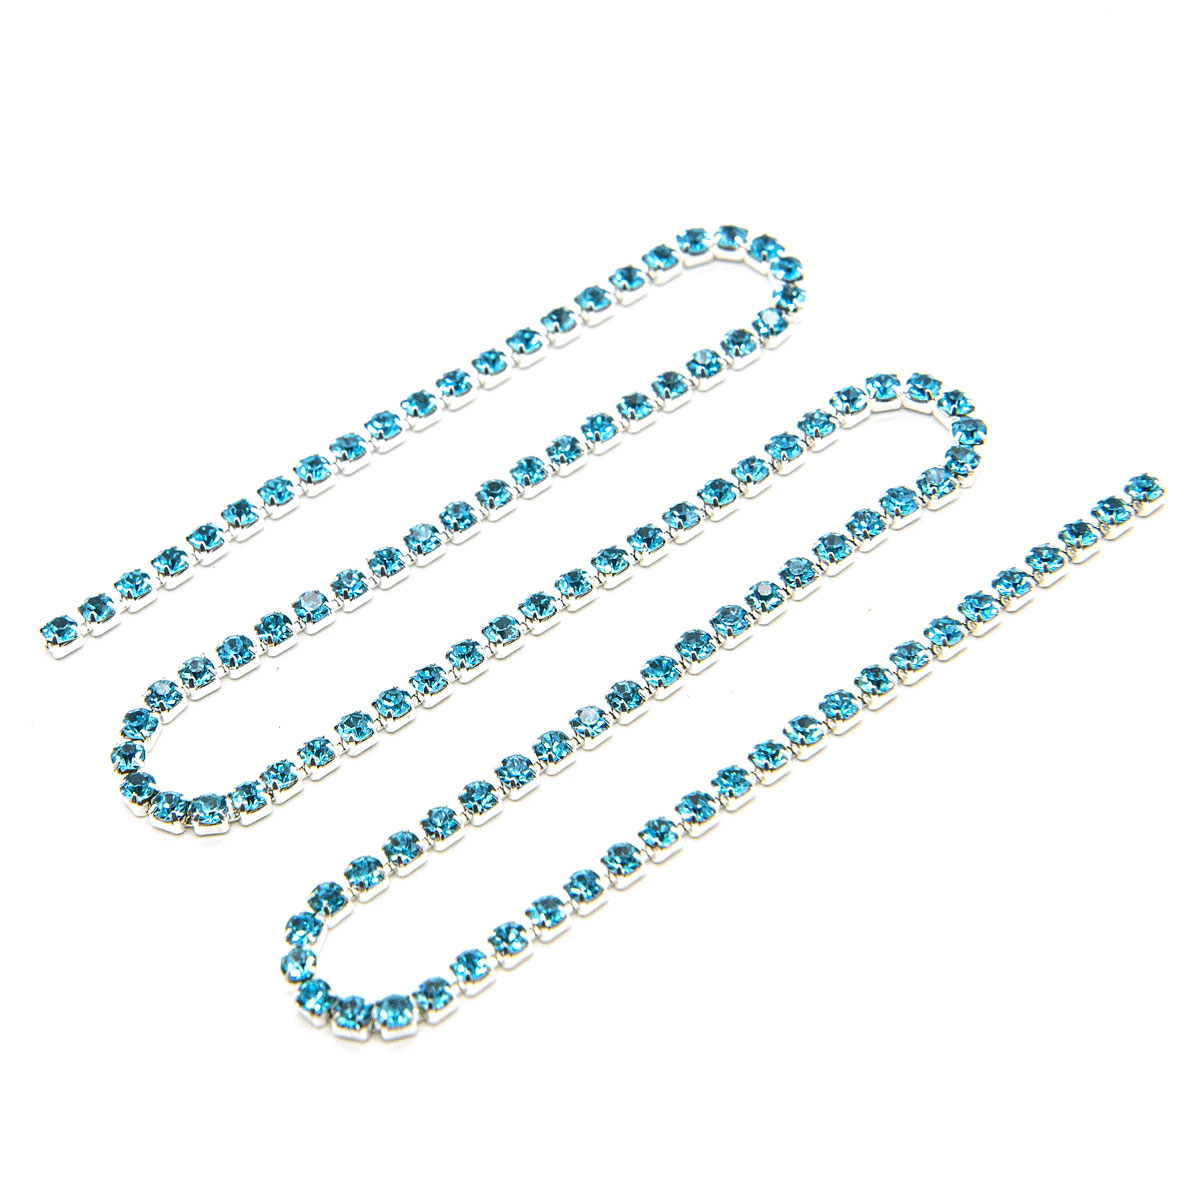 ЦС003СЦ2 Стразовые цепочки (серебро), цвет: ярко-голубой, размер 2 мм, 30 см/упак.